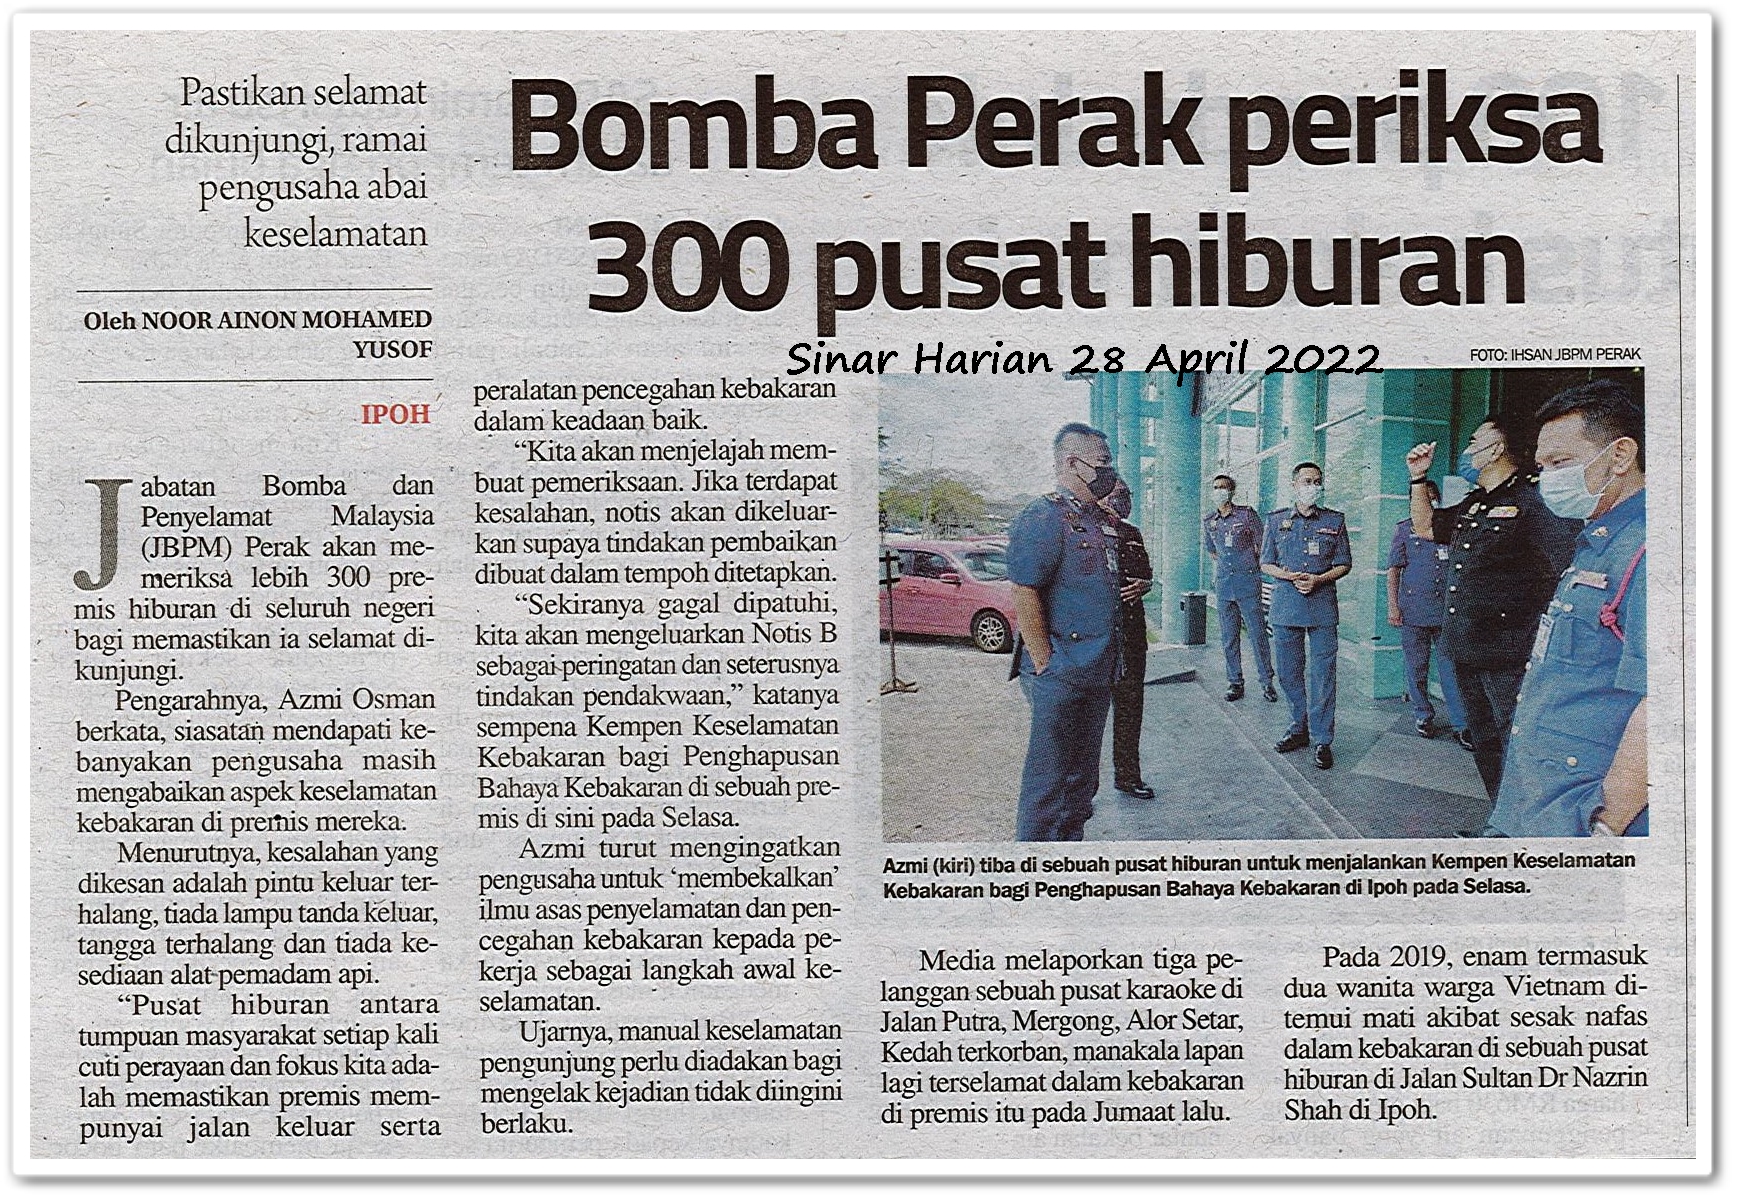 Bomba Perak periksa 300 pusat hiburan ; Pastikan selamat dikunjungi, ramai pengusaha abai keselamatan - Keratan akhbar Sinar Harian 28 April 2022